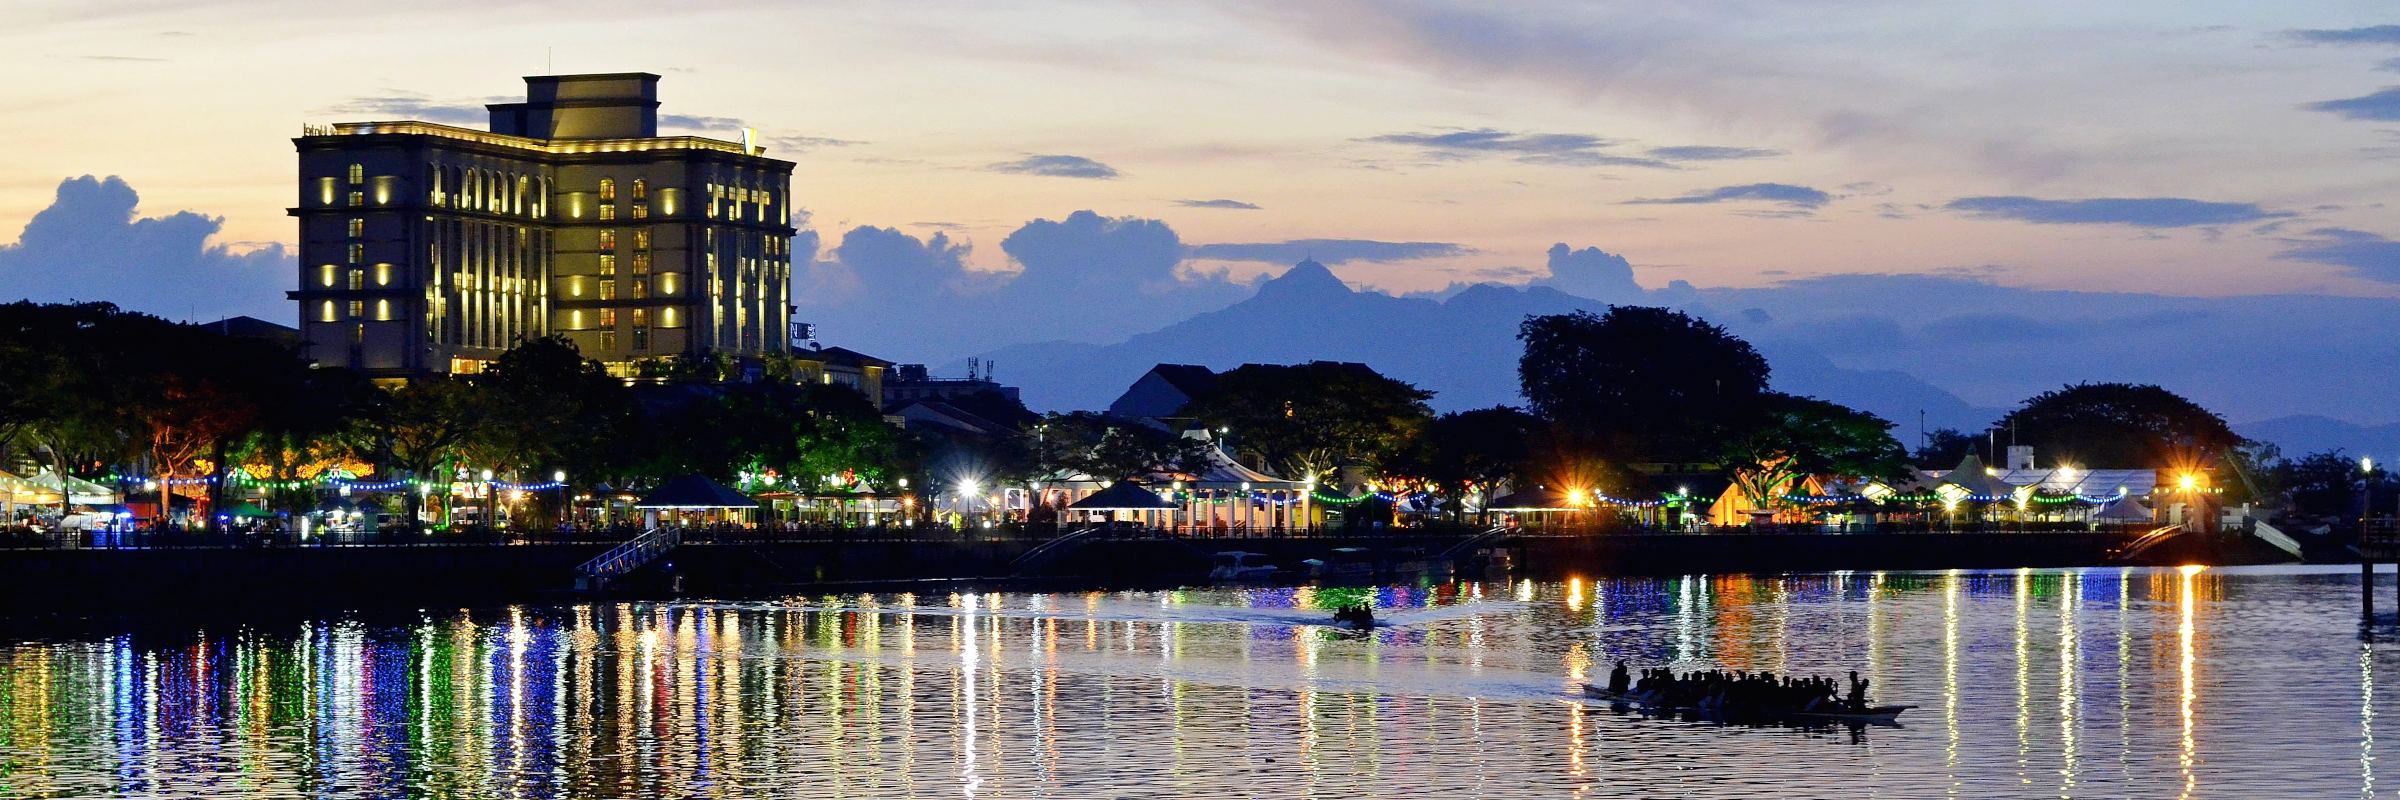 Eine gute Basis für Entdeckungen auf Borneo Reisen bietet Sarawaks Hauptstadt Kuching – Borneo Reisen